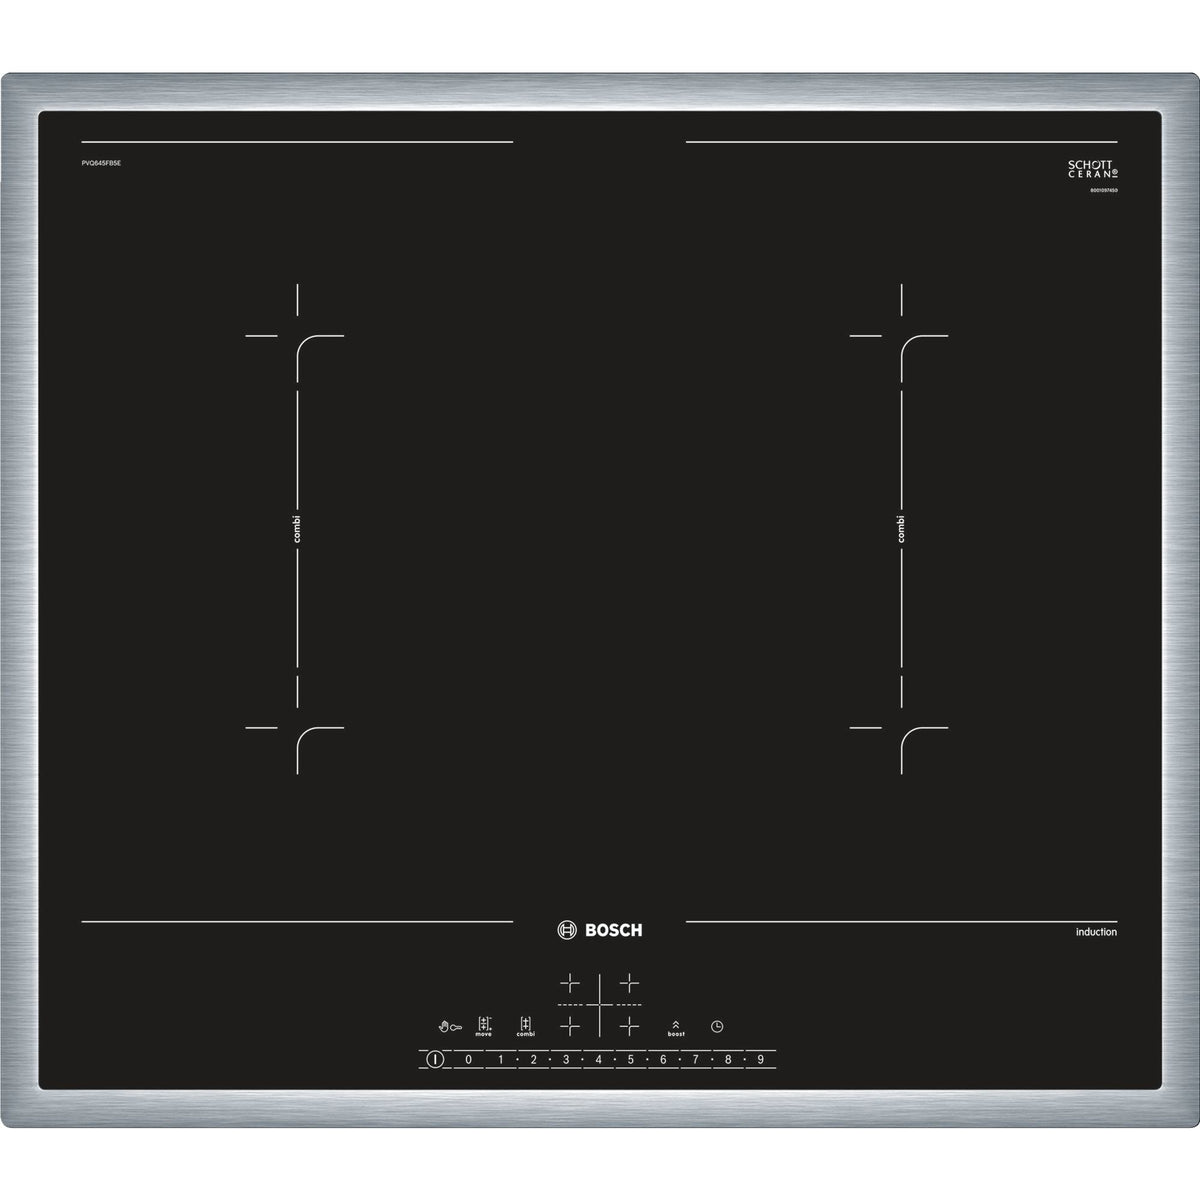 Indukční varná deska Bosch,60cm,4zóny,z toho 2xCombiZone,7,4kW